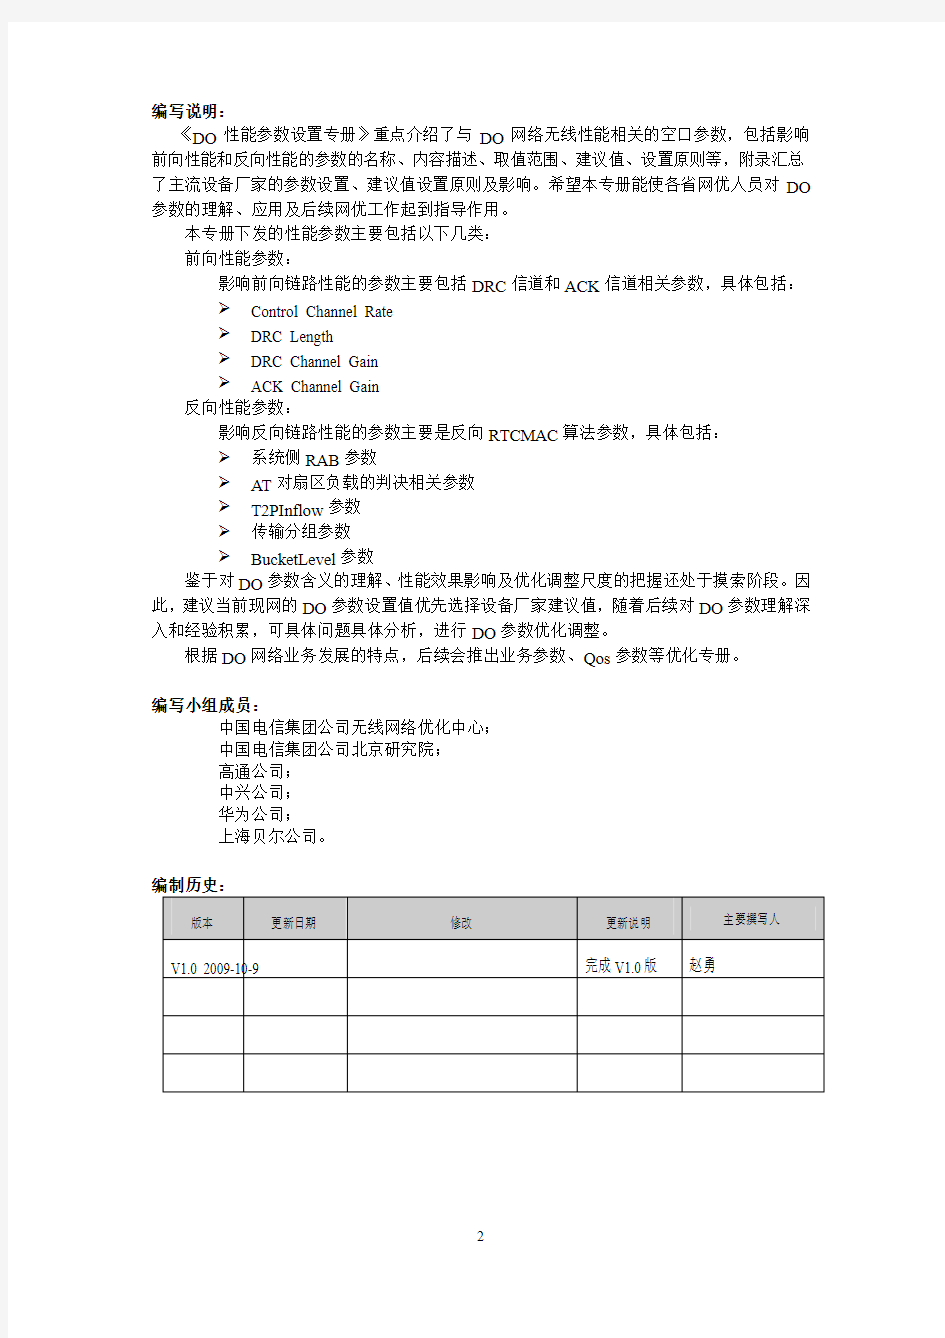 中国电信2009年EVDO网络优化技术白皮书(性能参数设置专册)V1.0